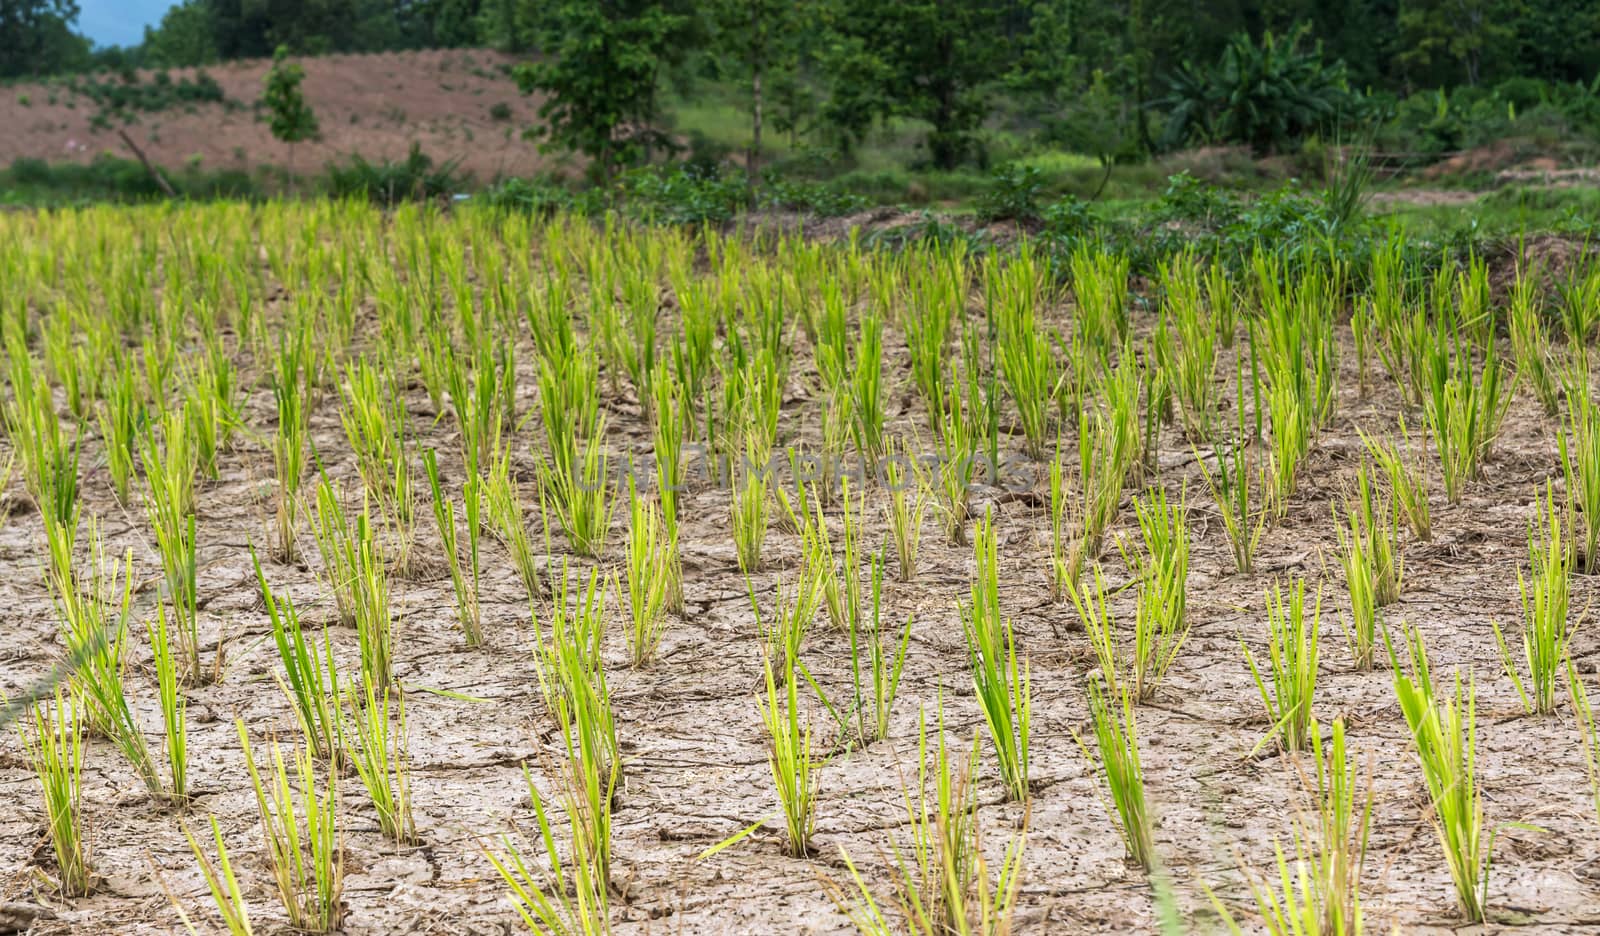 dried farmland and rice trees waiting for rainy season